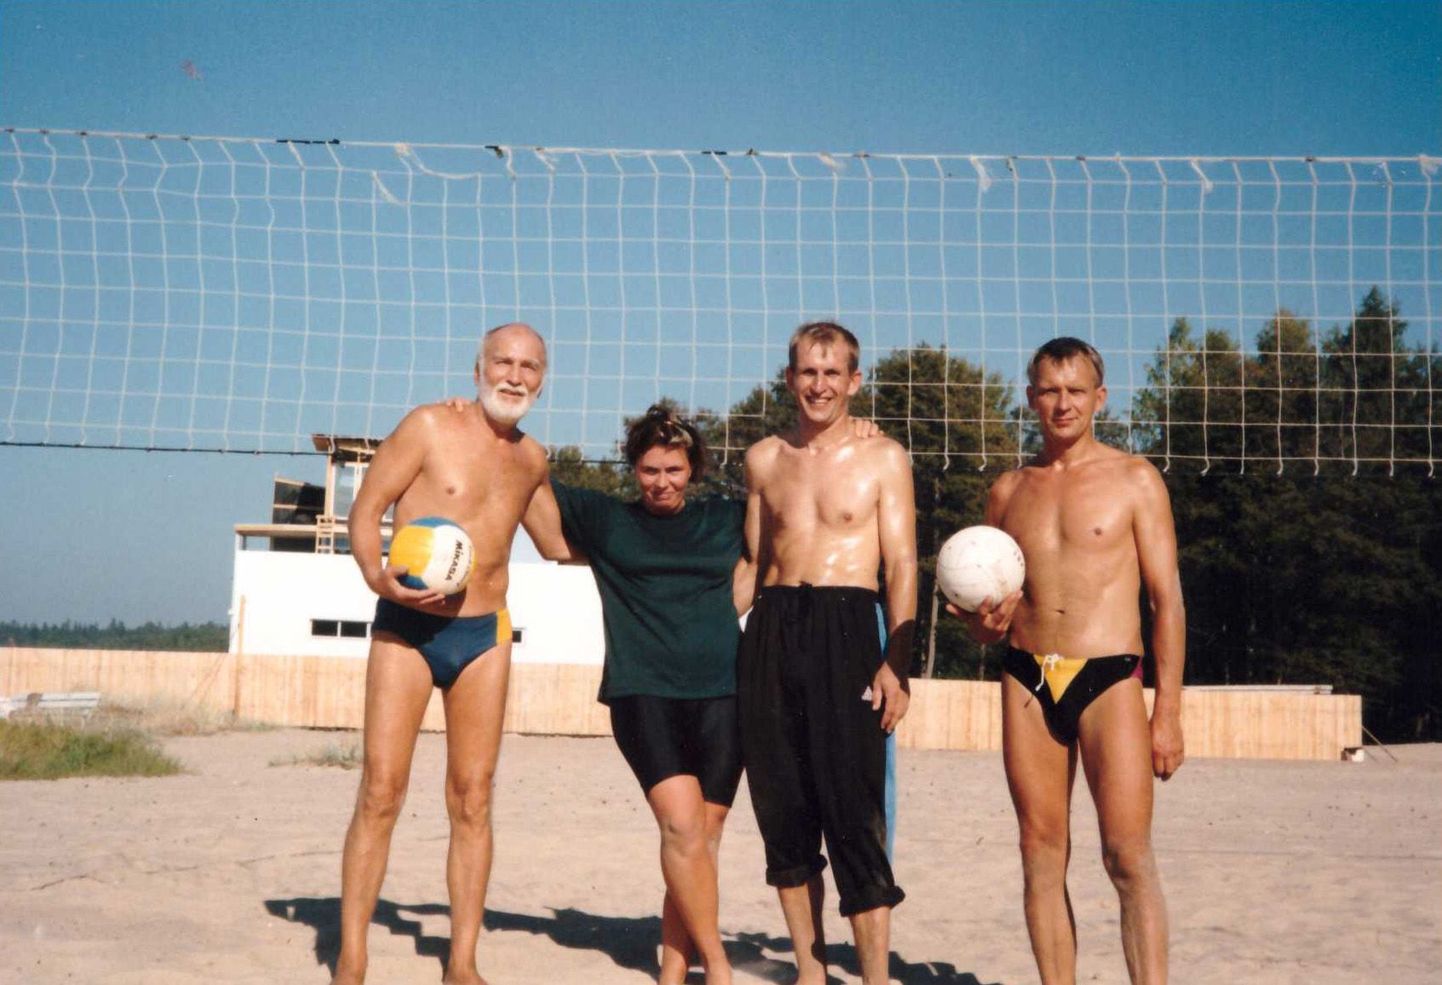 Võsu rannaliiv ja vollemäng köitis nii suurt spordihuvilist Mikk Mikiveri (vasakul) kui ka tema häid sõpru Marika Innost, Ilmar Loitet ja Aarne Innost.